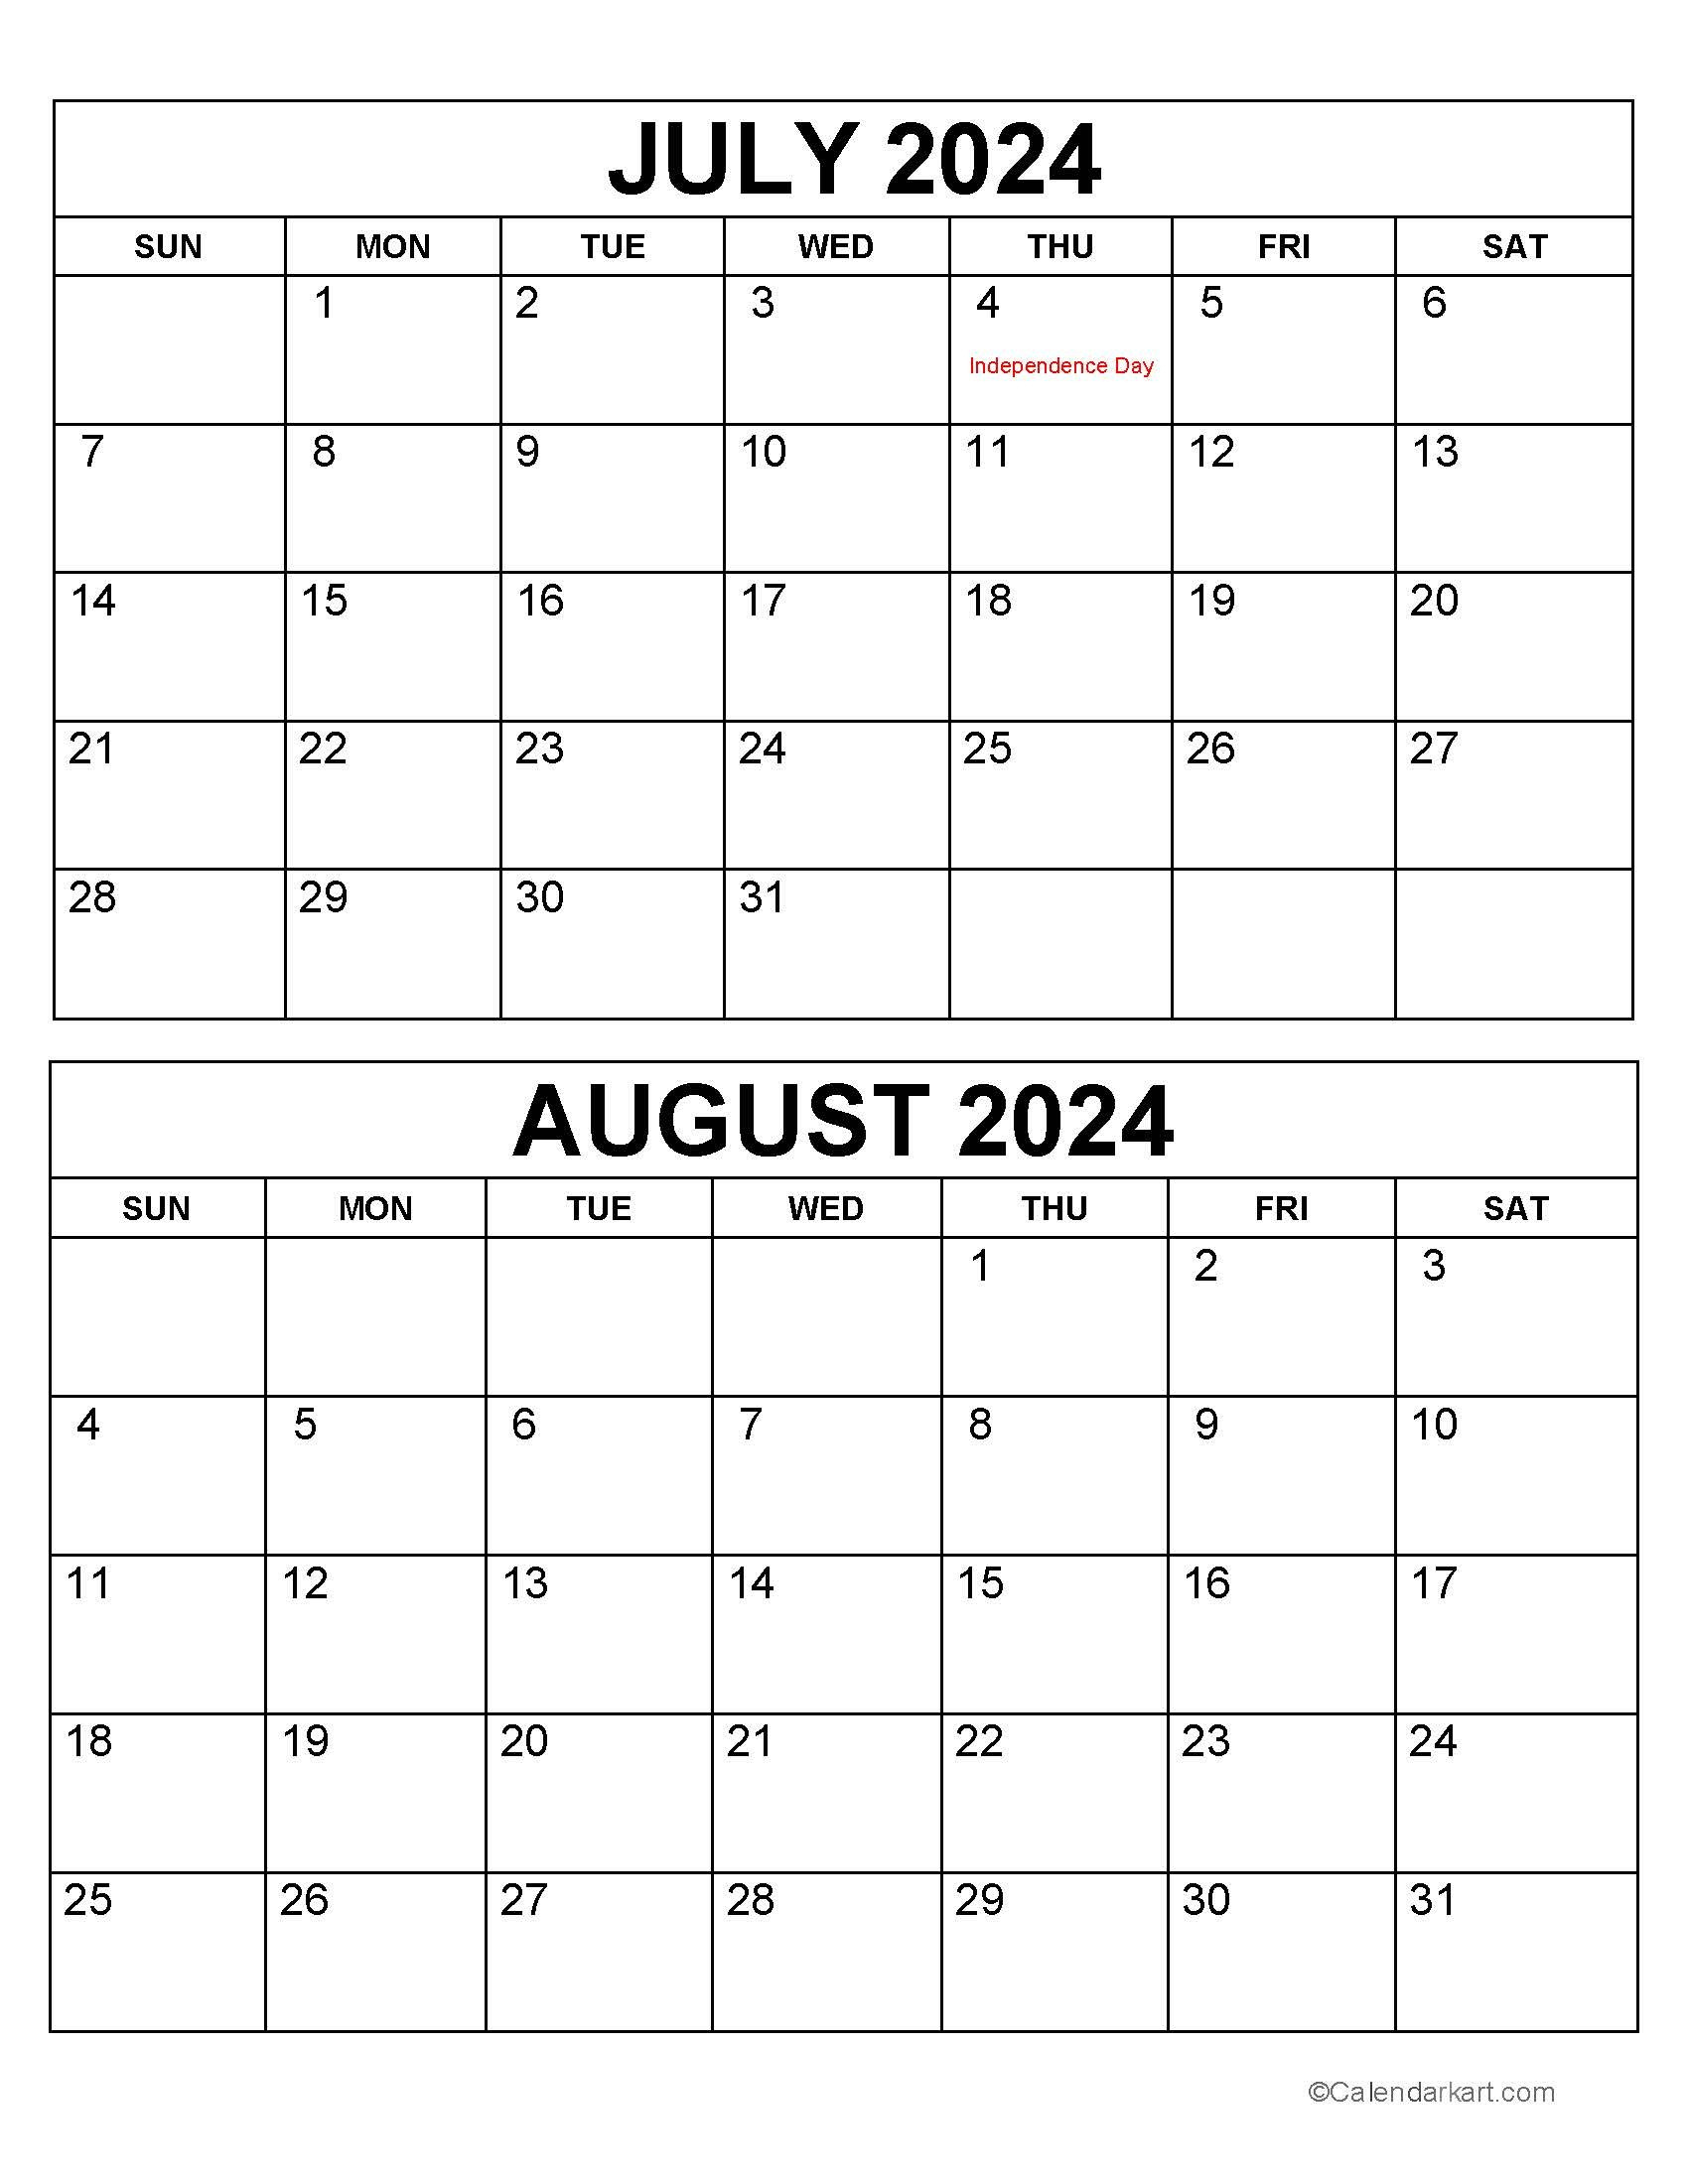 Printable July August 2024 Calendar | Calendarkart regarding July and August 2024 Calendar